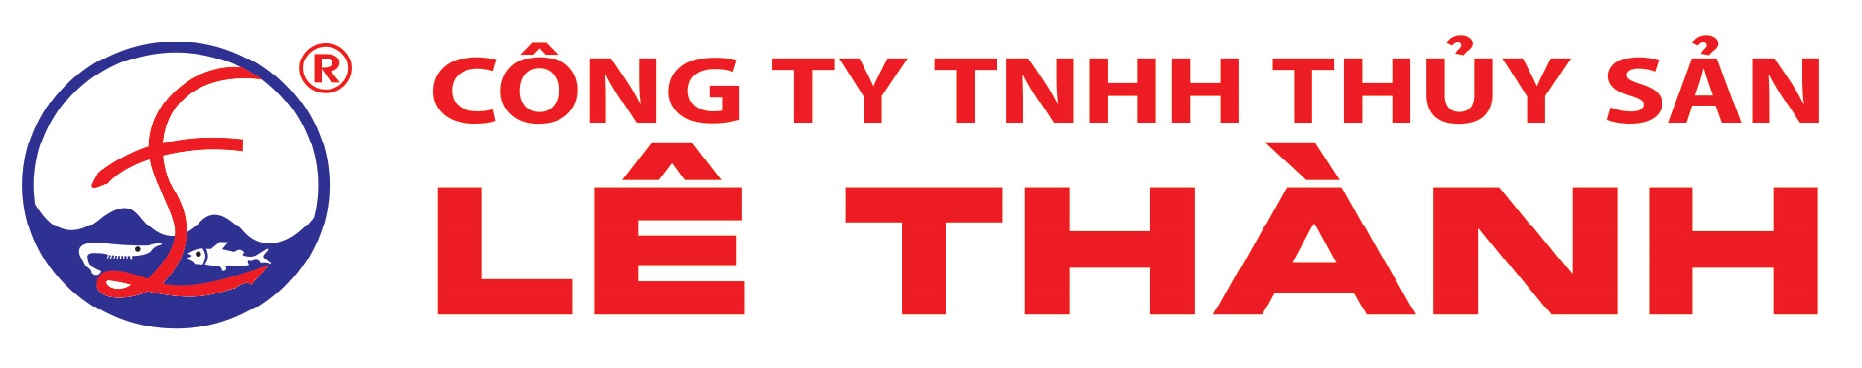 Công ty TNHH Thủy sản Lê Thành